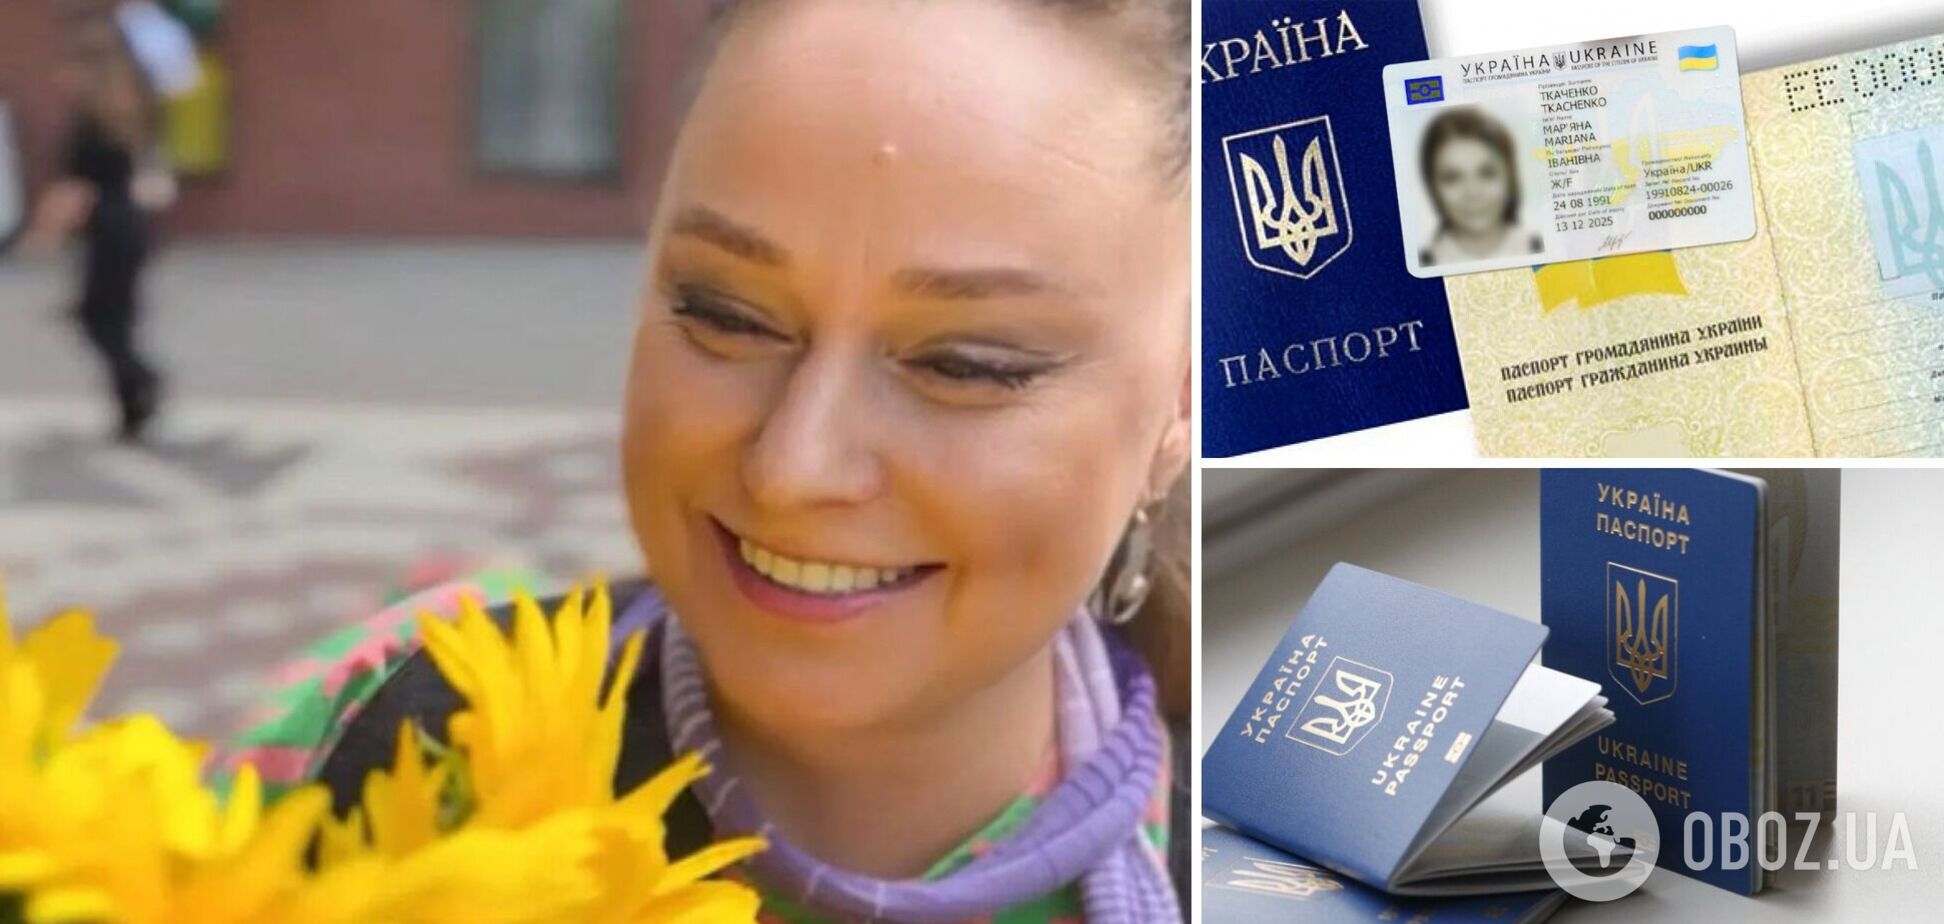 Зірка українських серіалів офіційно змінила ім’я та прізвище через русифікацію. Ексклюзив